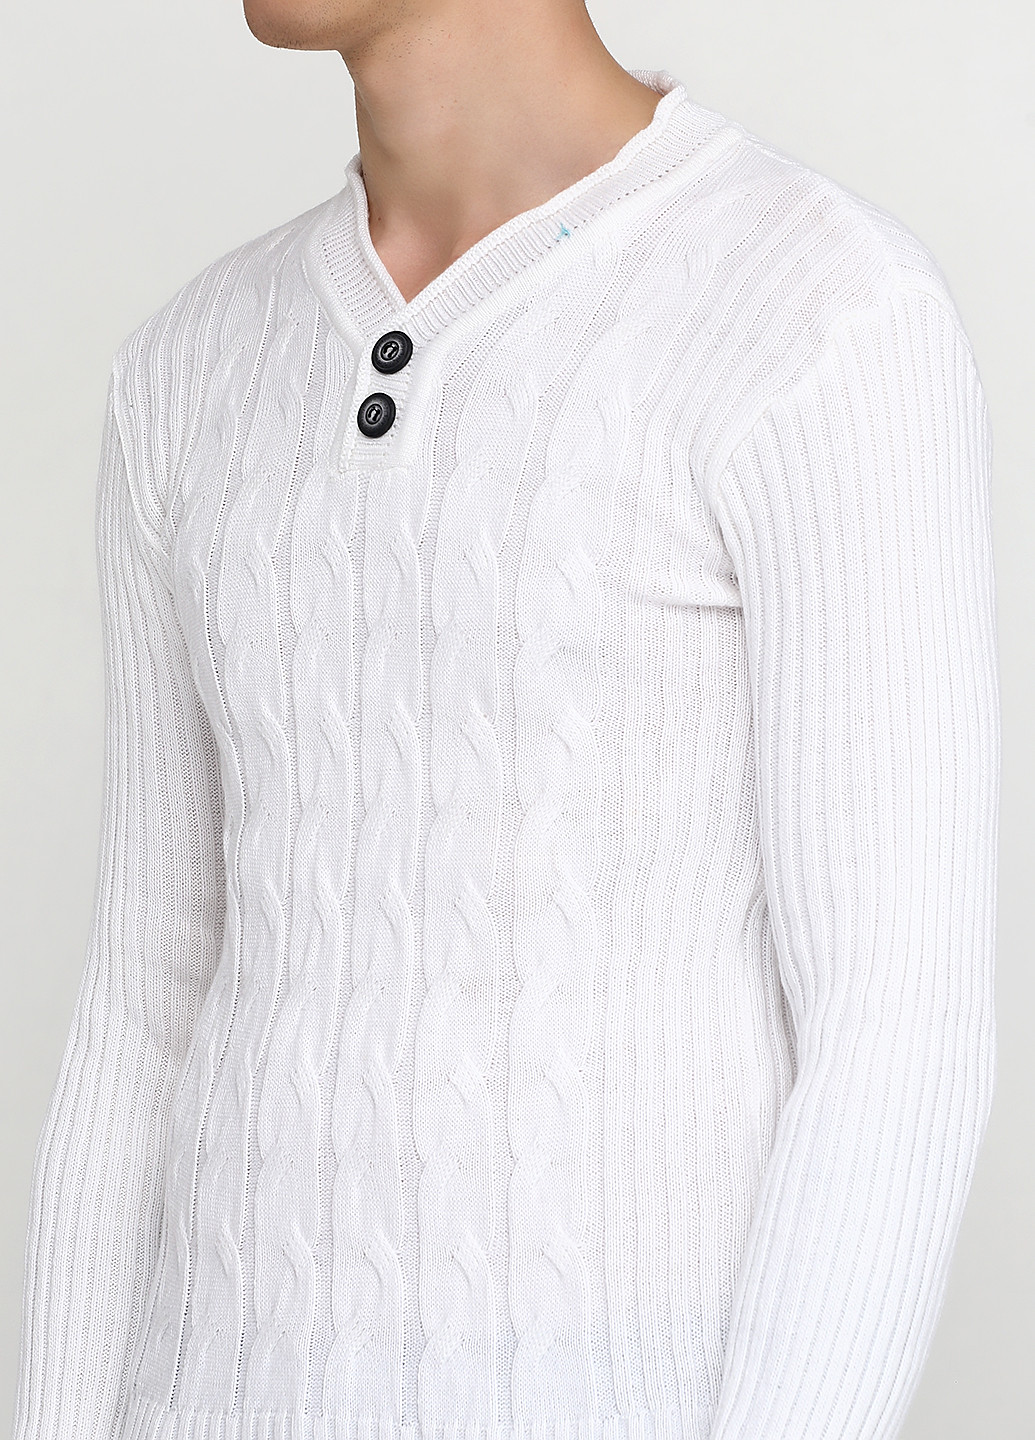 Белый демисезонный пуловер пуловер Altin